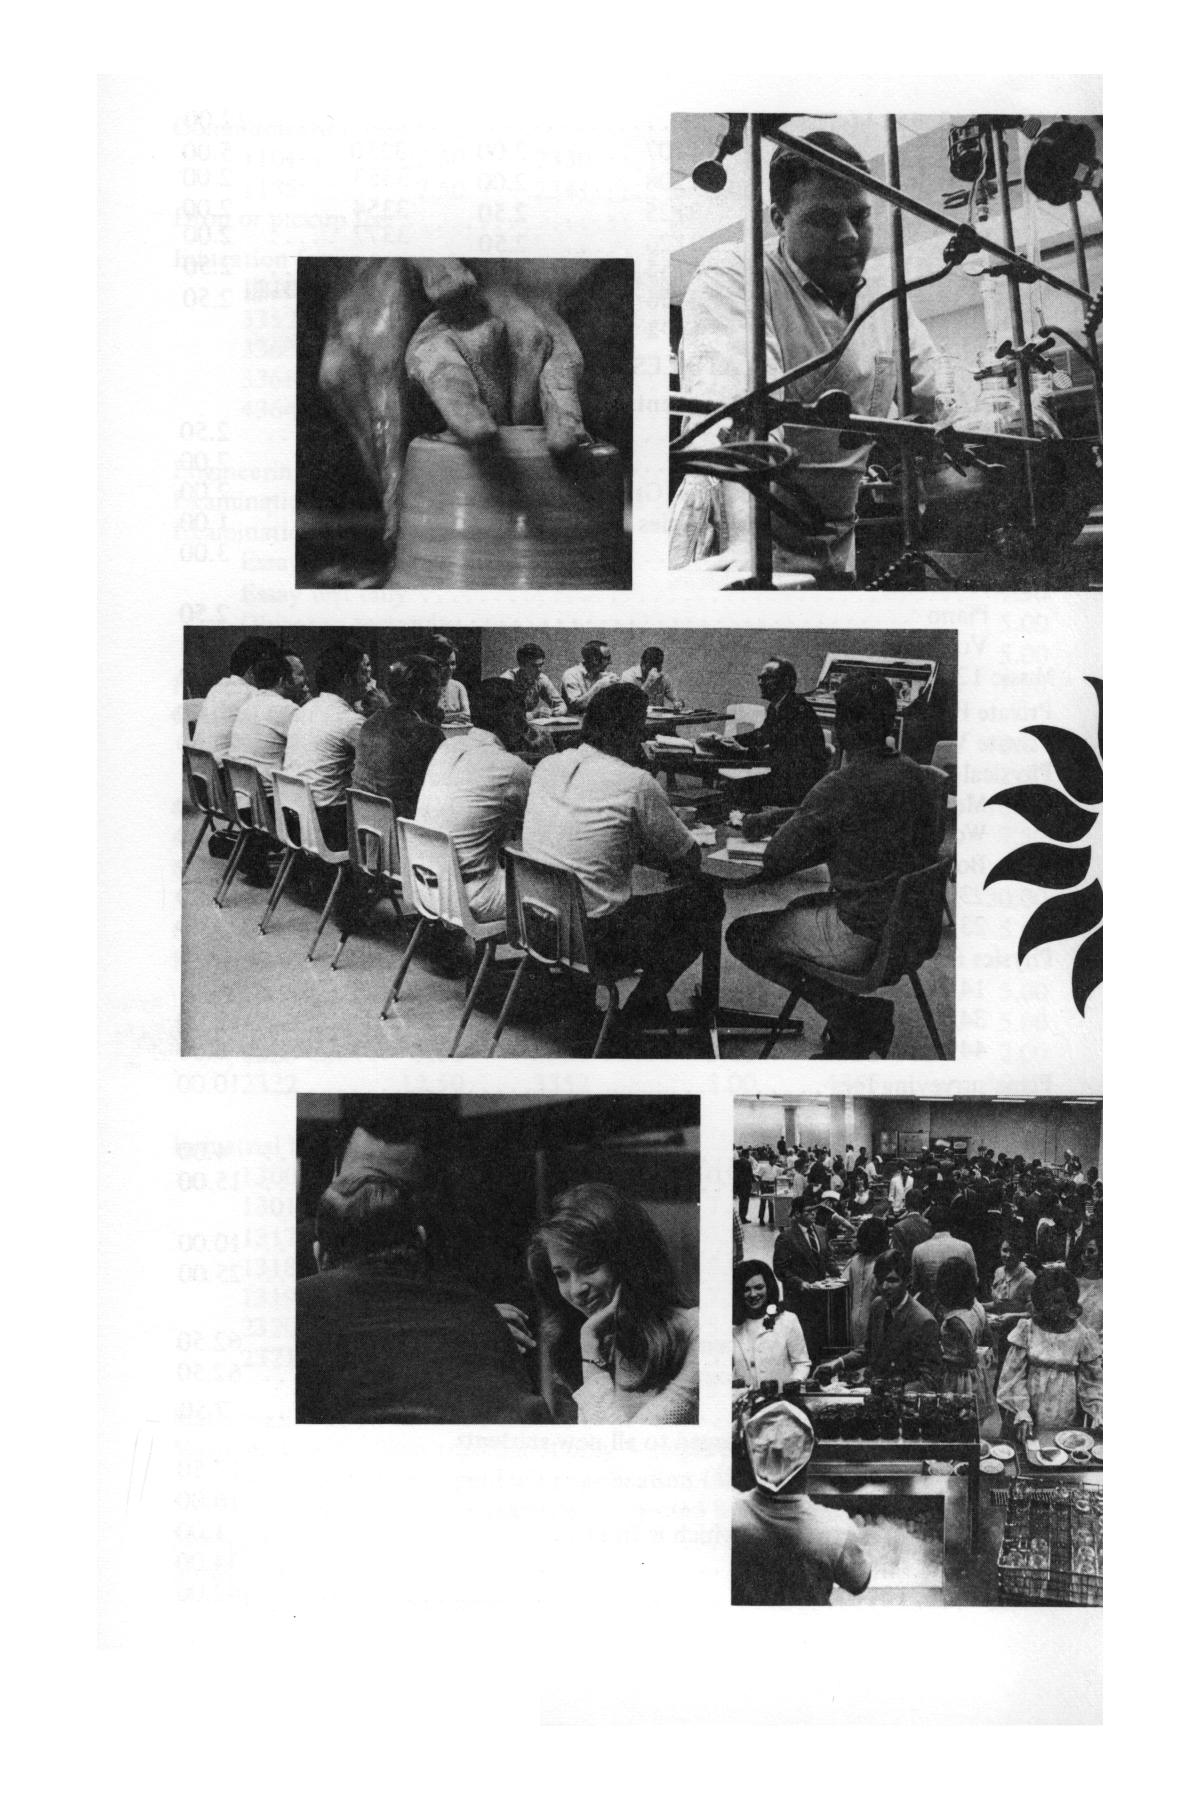 Catalog of Abilene Christian College, 1971
                                                
                                                    9
                                                